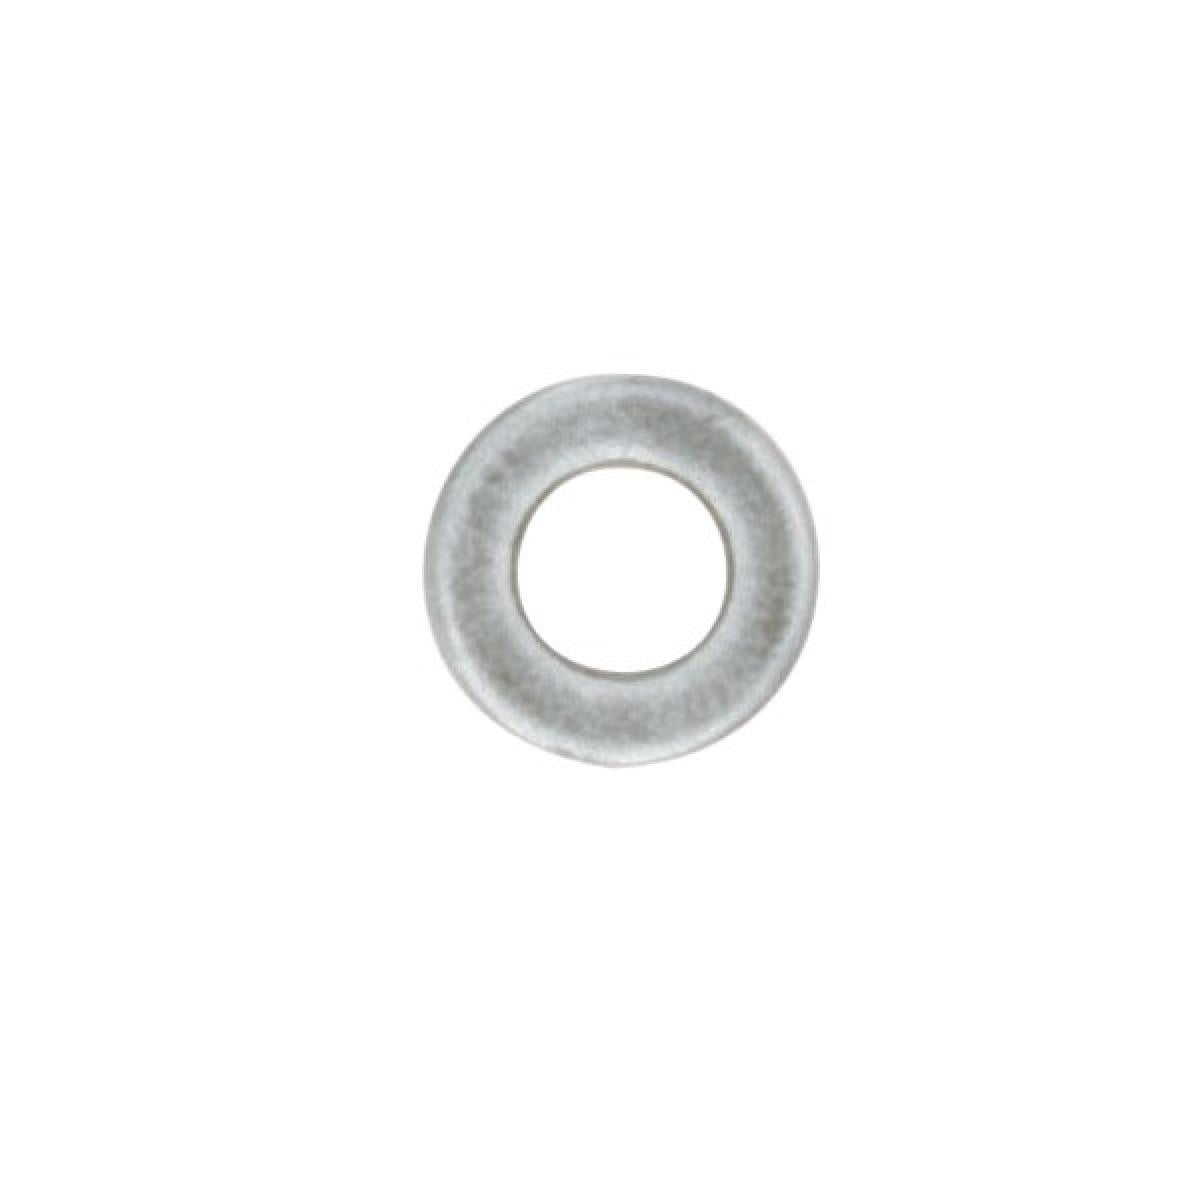 Satco 90-1831 Steel Washer 1/4 IP Slip 18 Gauge Unfinished 4" Diameter